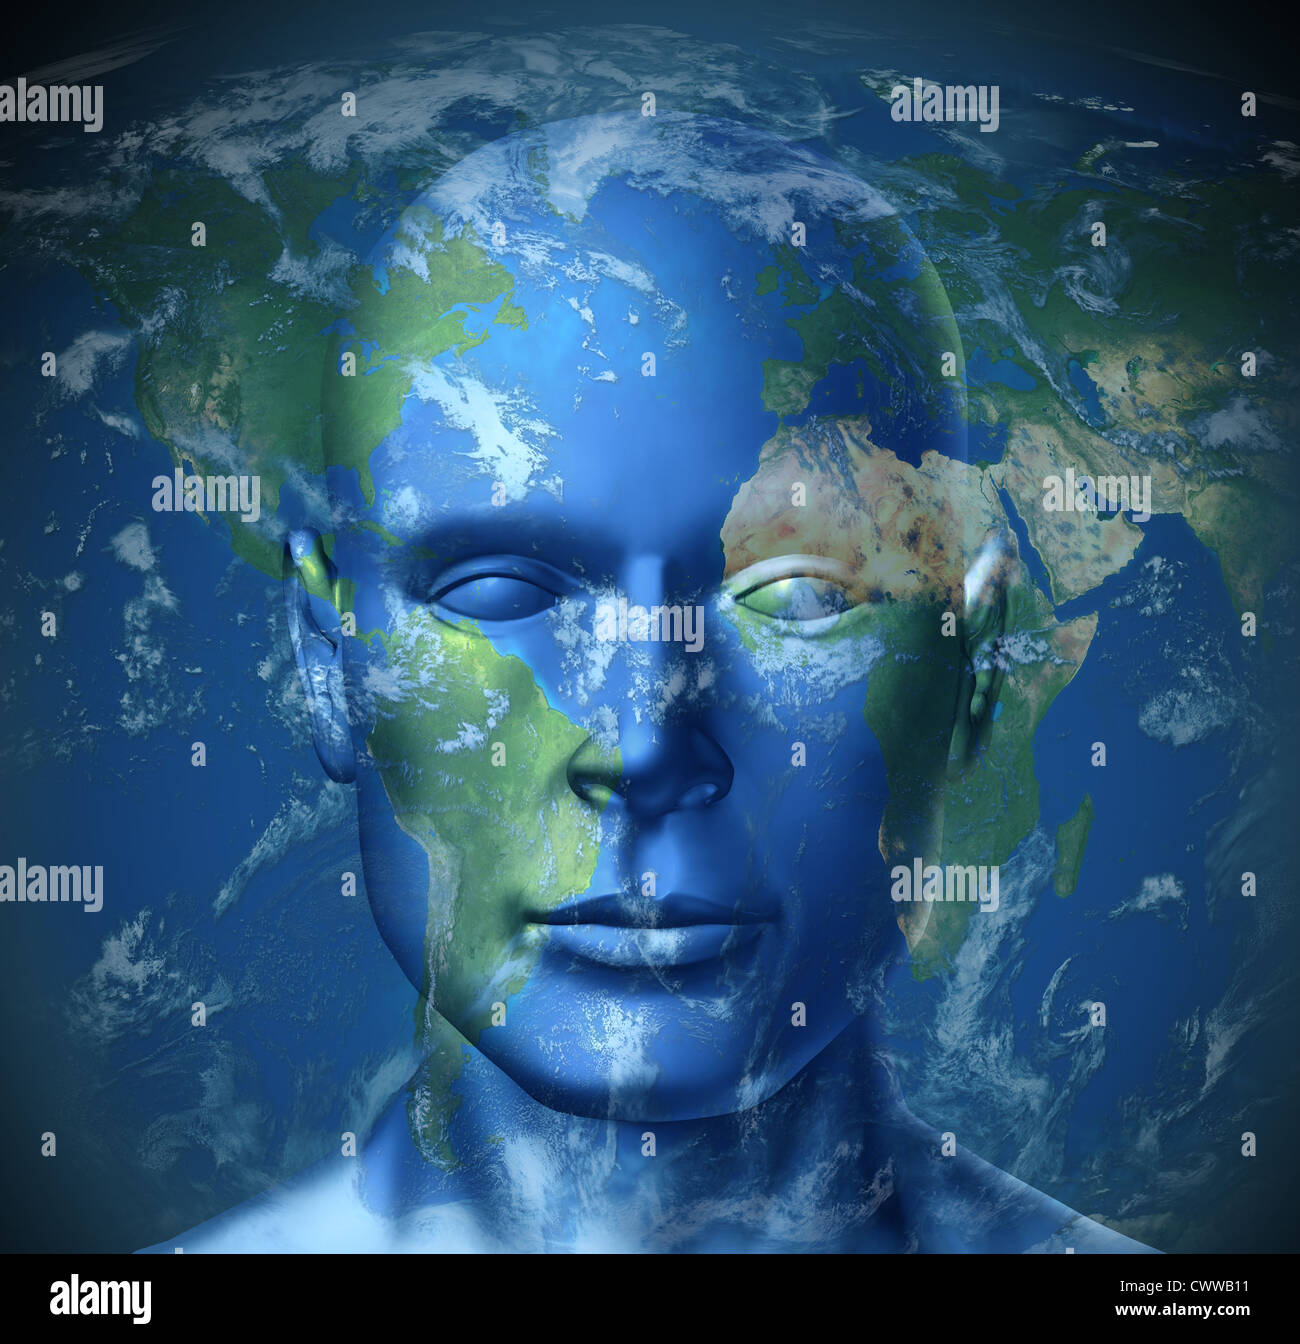 Global Tourist vertreten durch eine Weltkarte mit einem menschlichen Kopf zeigt das Konzept der Reisen und Ausflüge zu Sehenswürdigkeiten der Welt. Stockfoto